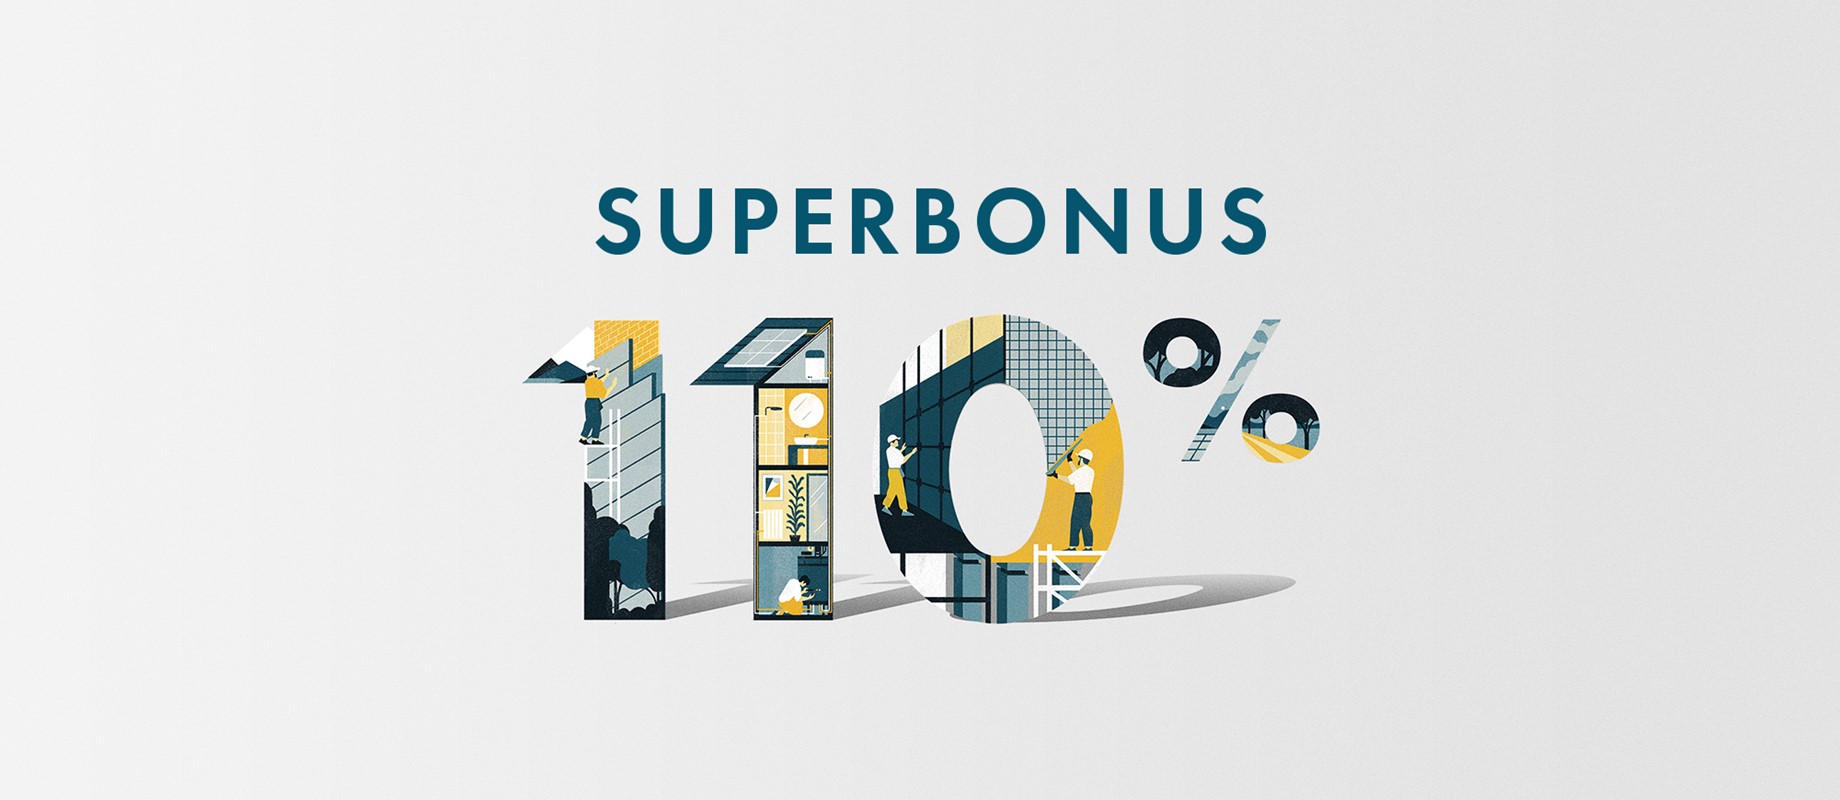 Detrazione fiscale fino al 110% della spesa: approfitta del Superbonus 110% 